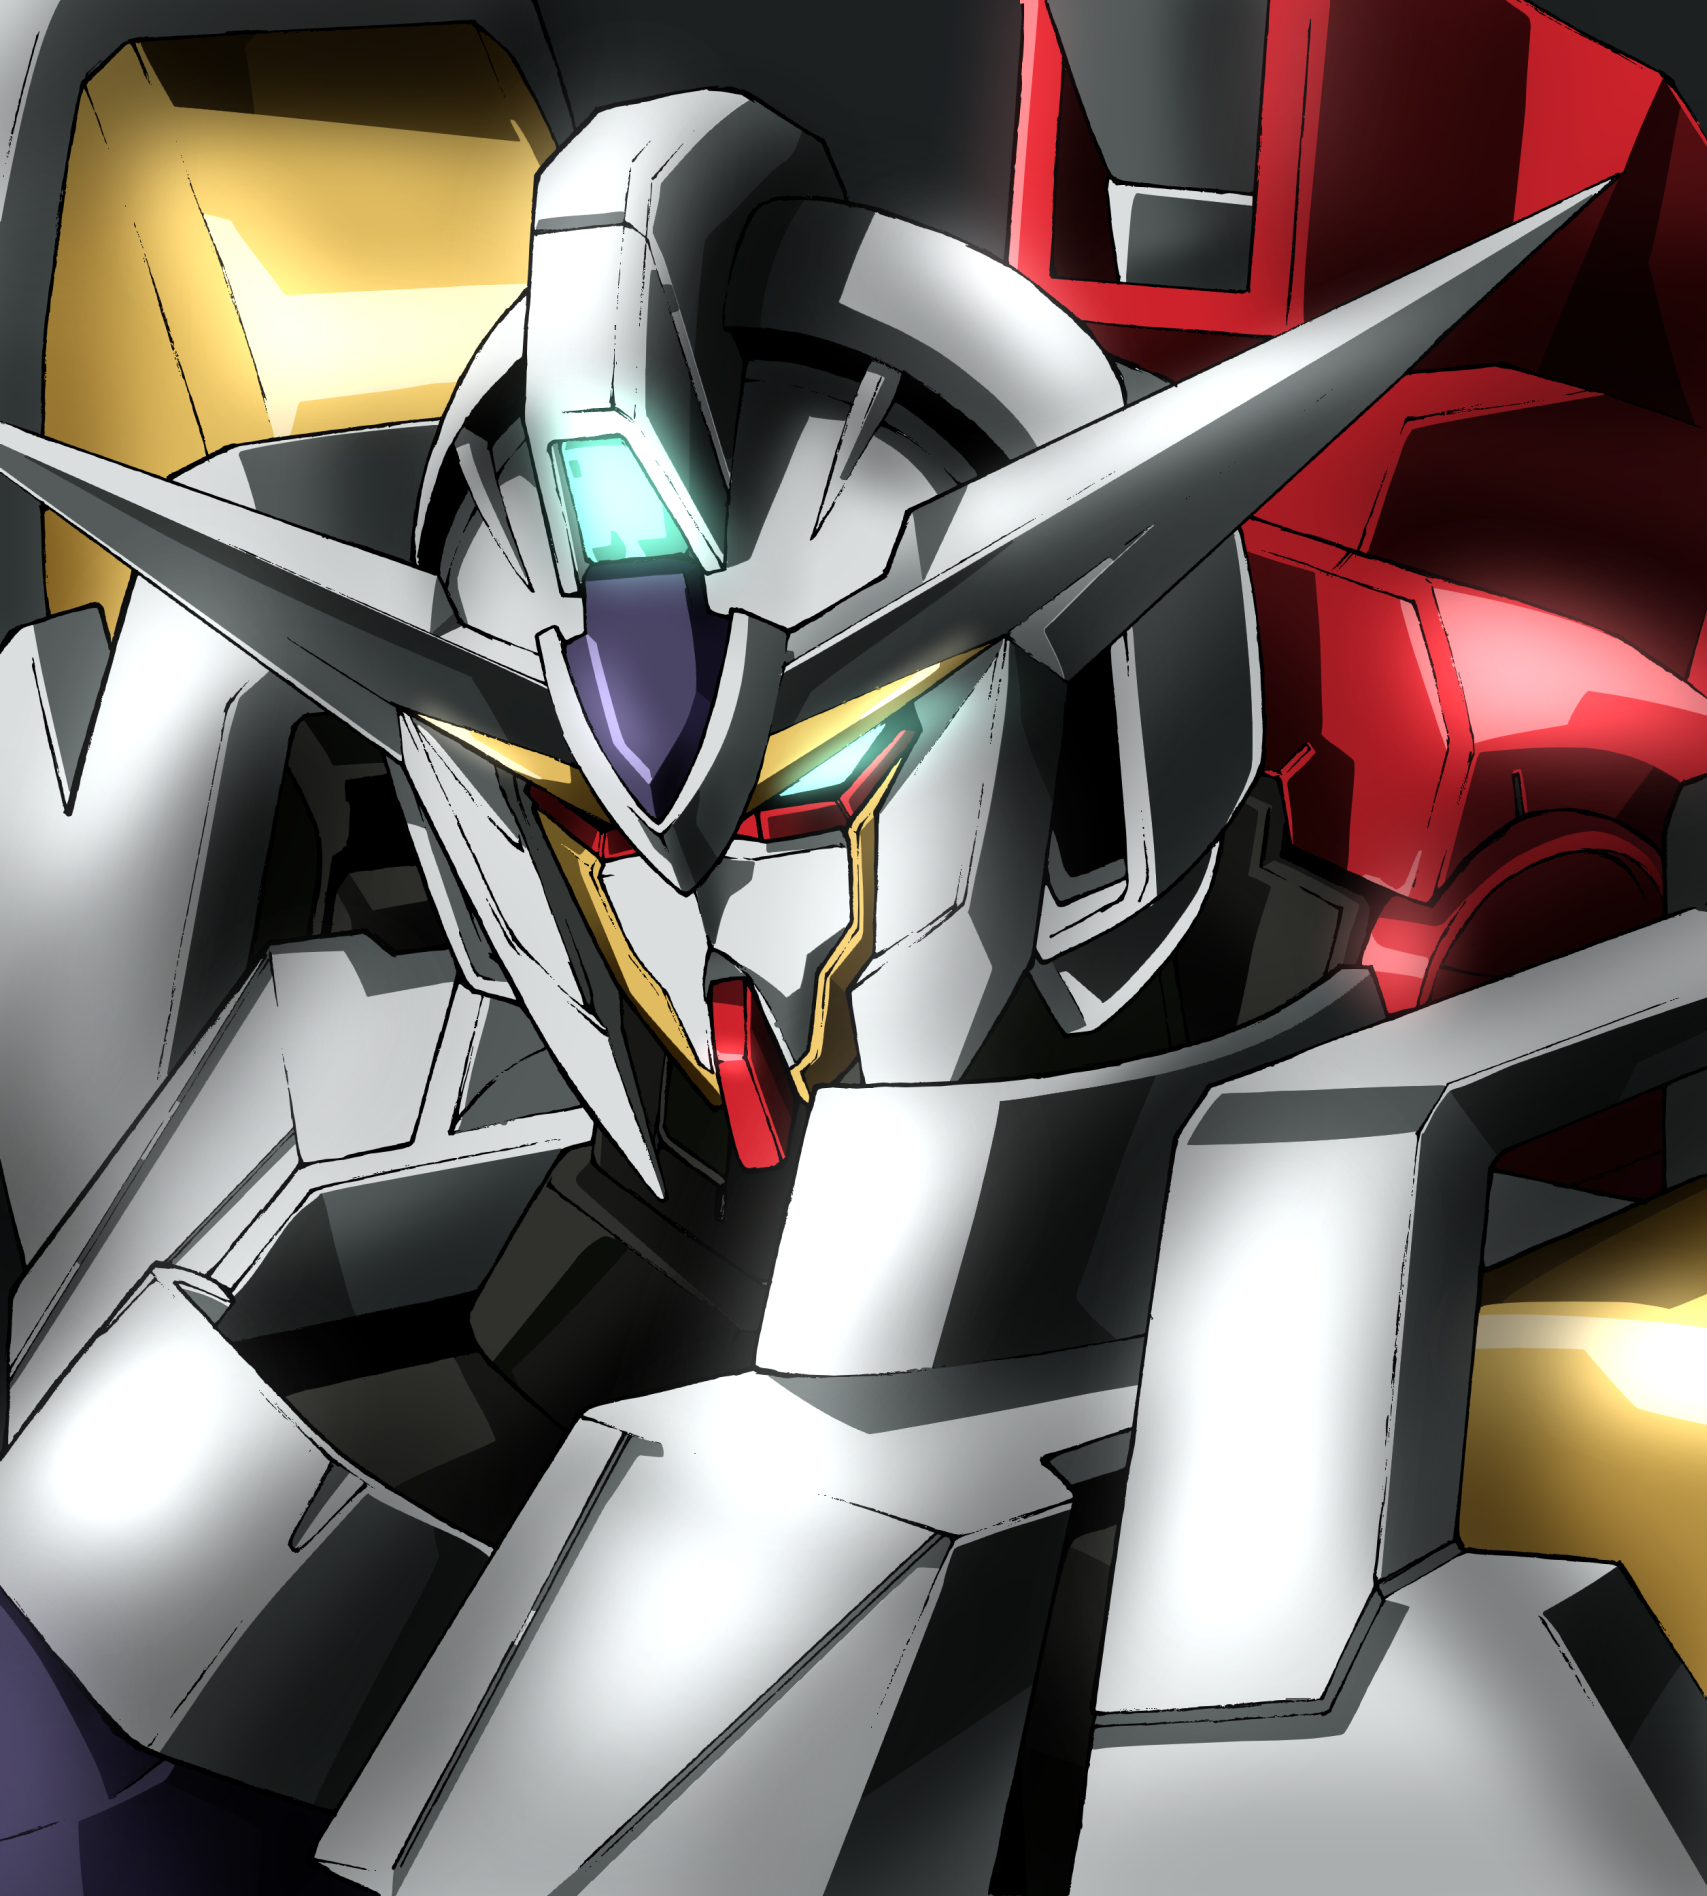 Anime 1707x1896 anime mechs Super Robot Taisen Gundam Mobile Suit Gundam 00 Reborns Gundam artwork digital art fan art